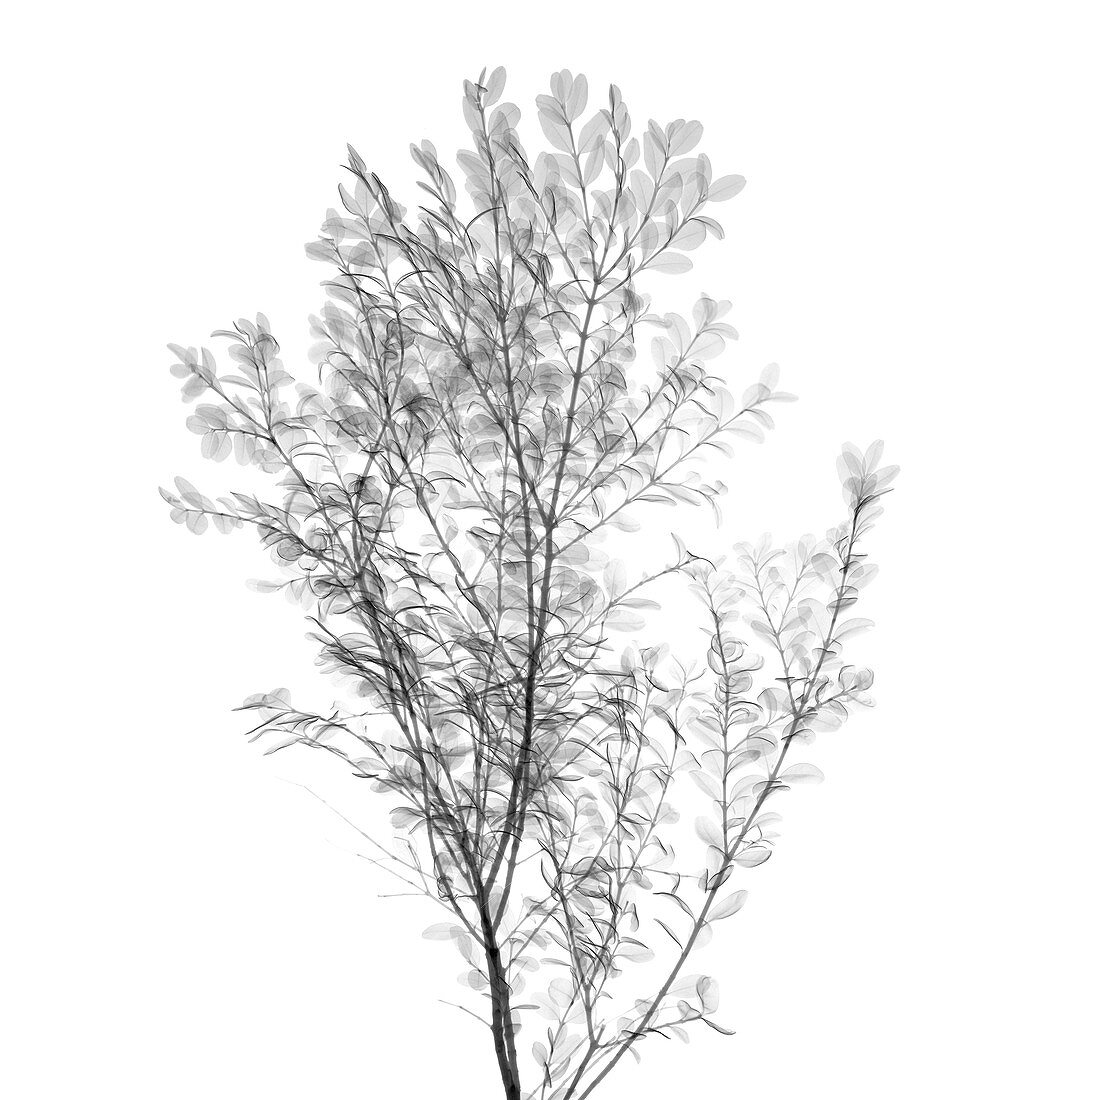 Viburnum shrub, X-ray